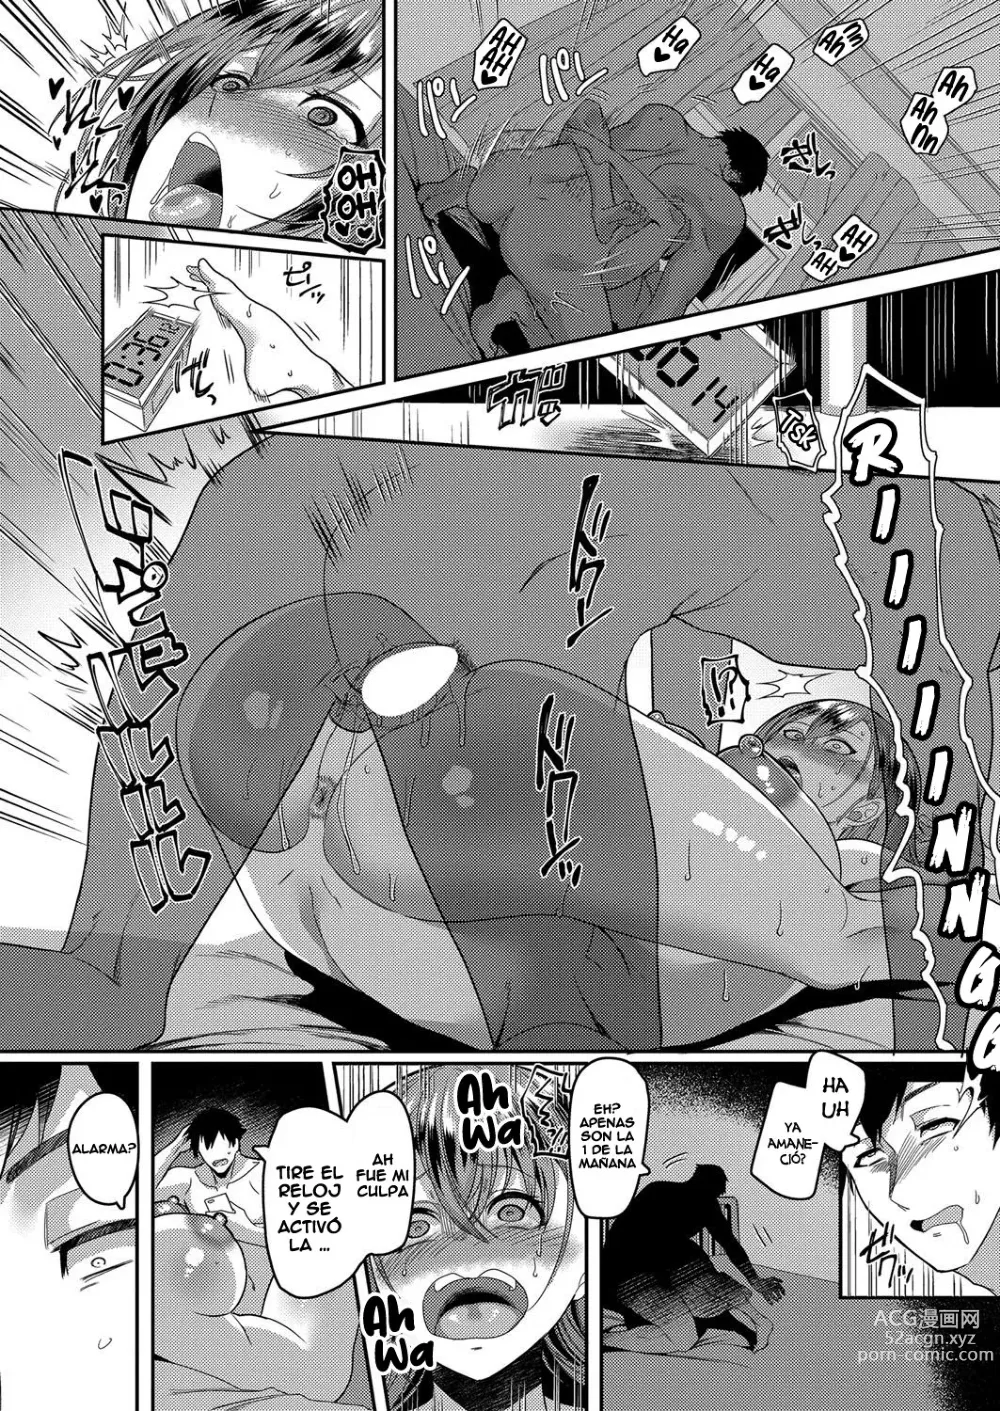 Page 8 of manga Ore wa tomarai no Osama-najimi ni saimin wo kakerareyeru